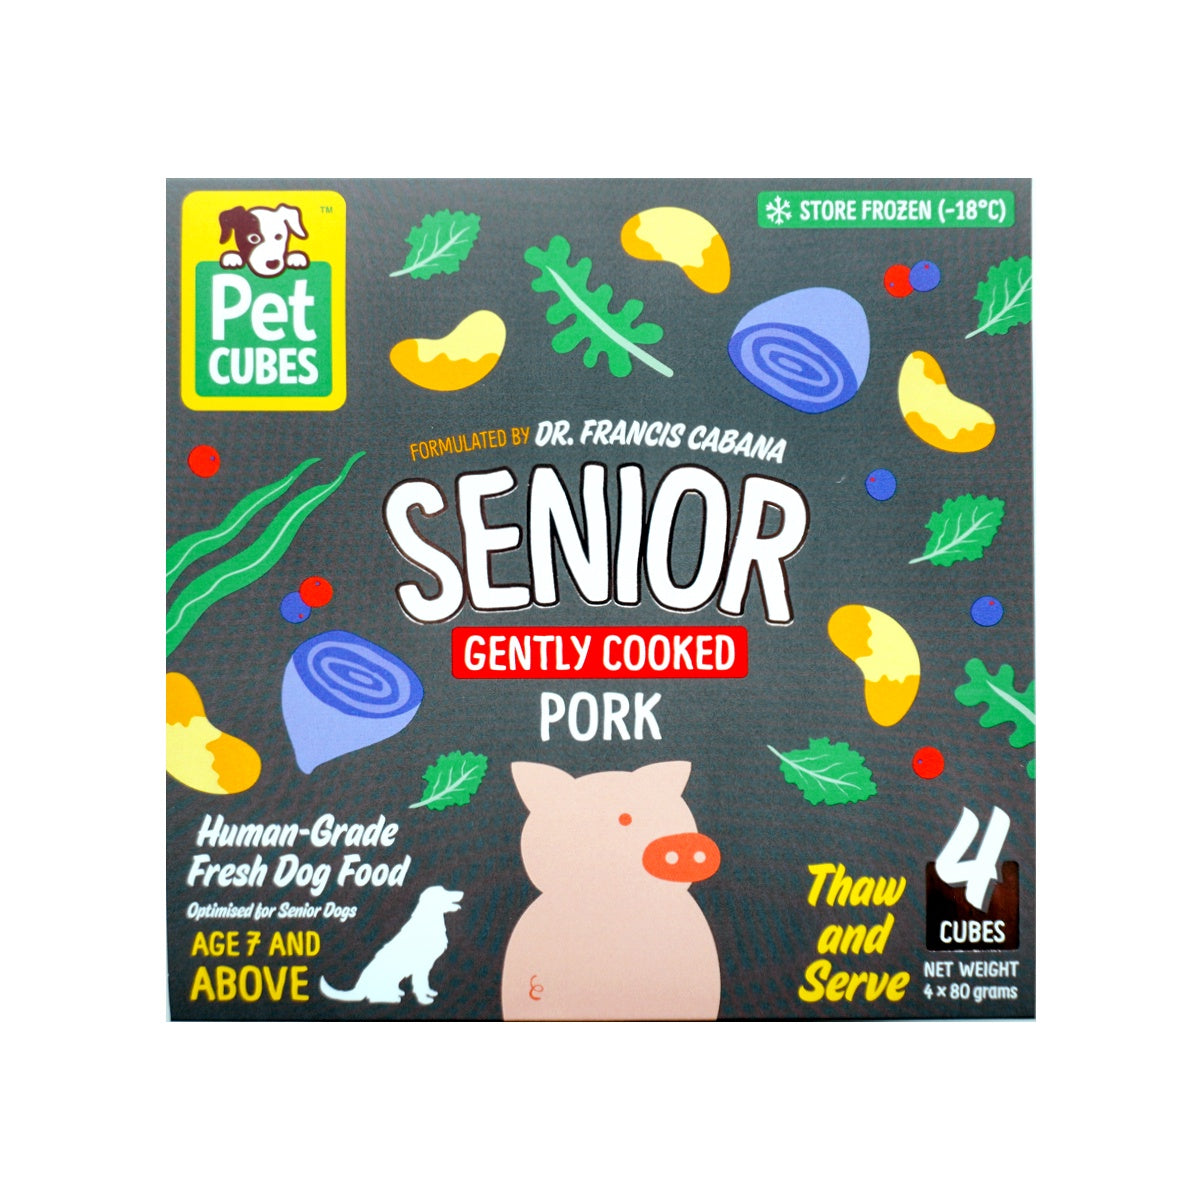 Pork -senior